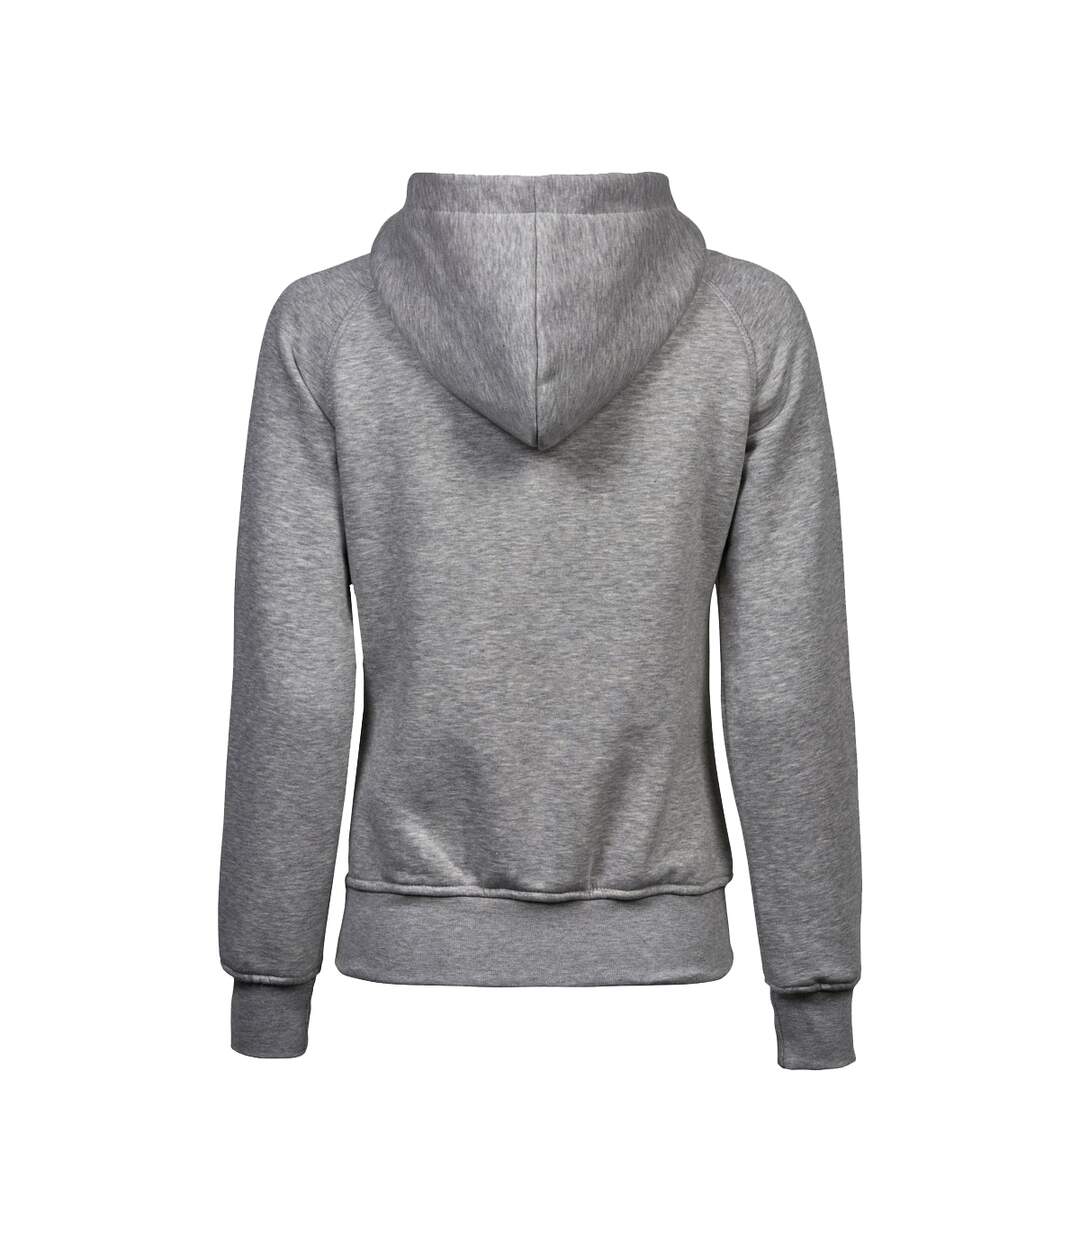 Tee Jays Womens/Ladies Full Zip Hooded Sweatshirt (Heather Gray)